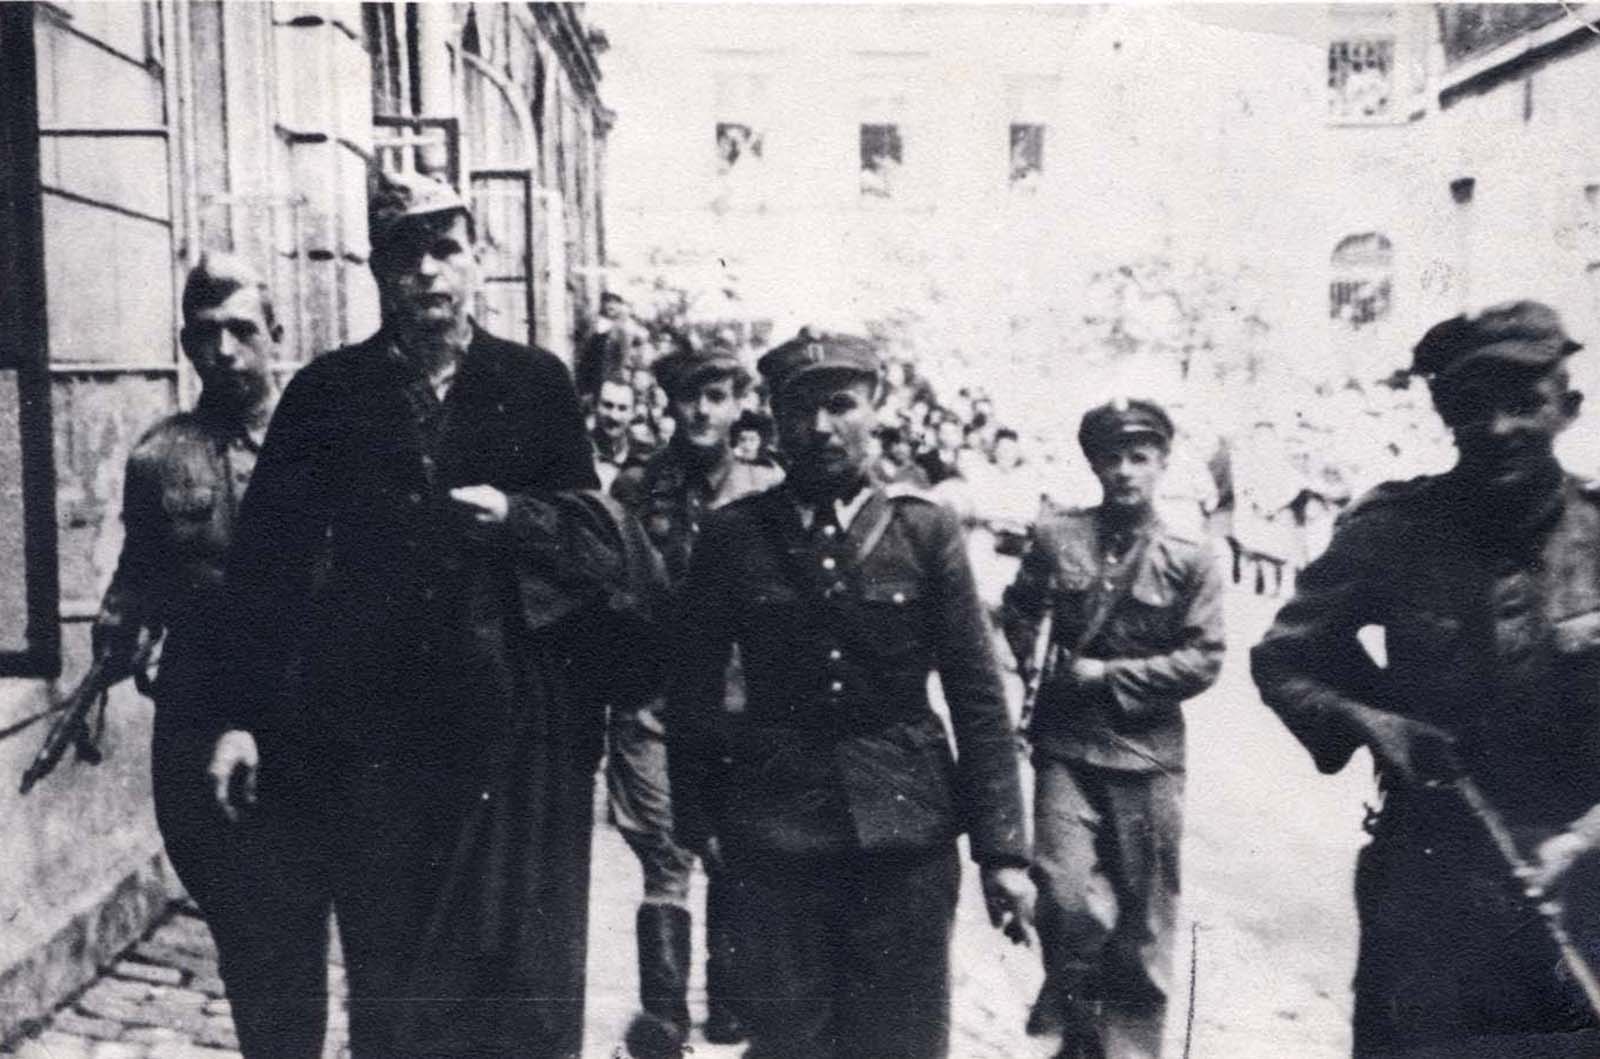 Commandant du Camp d'Amon Goeth, tristement célèbre depuis le film “la Liste de Schindler”, debout sur son balcon, la préparation de fusiller des prisonniers, 1943